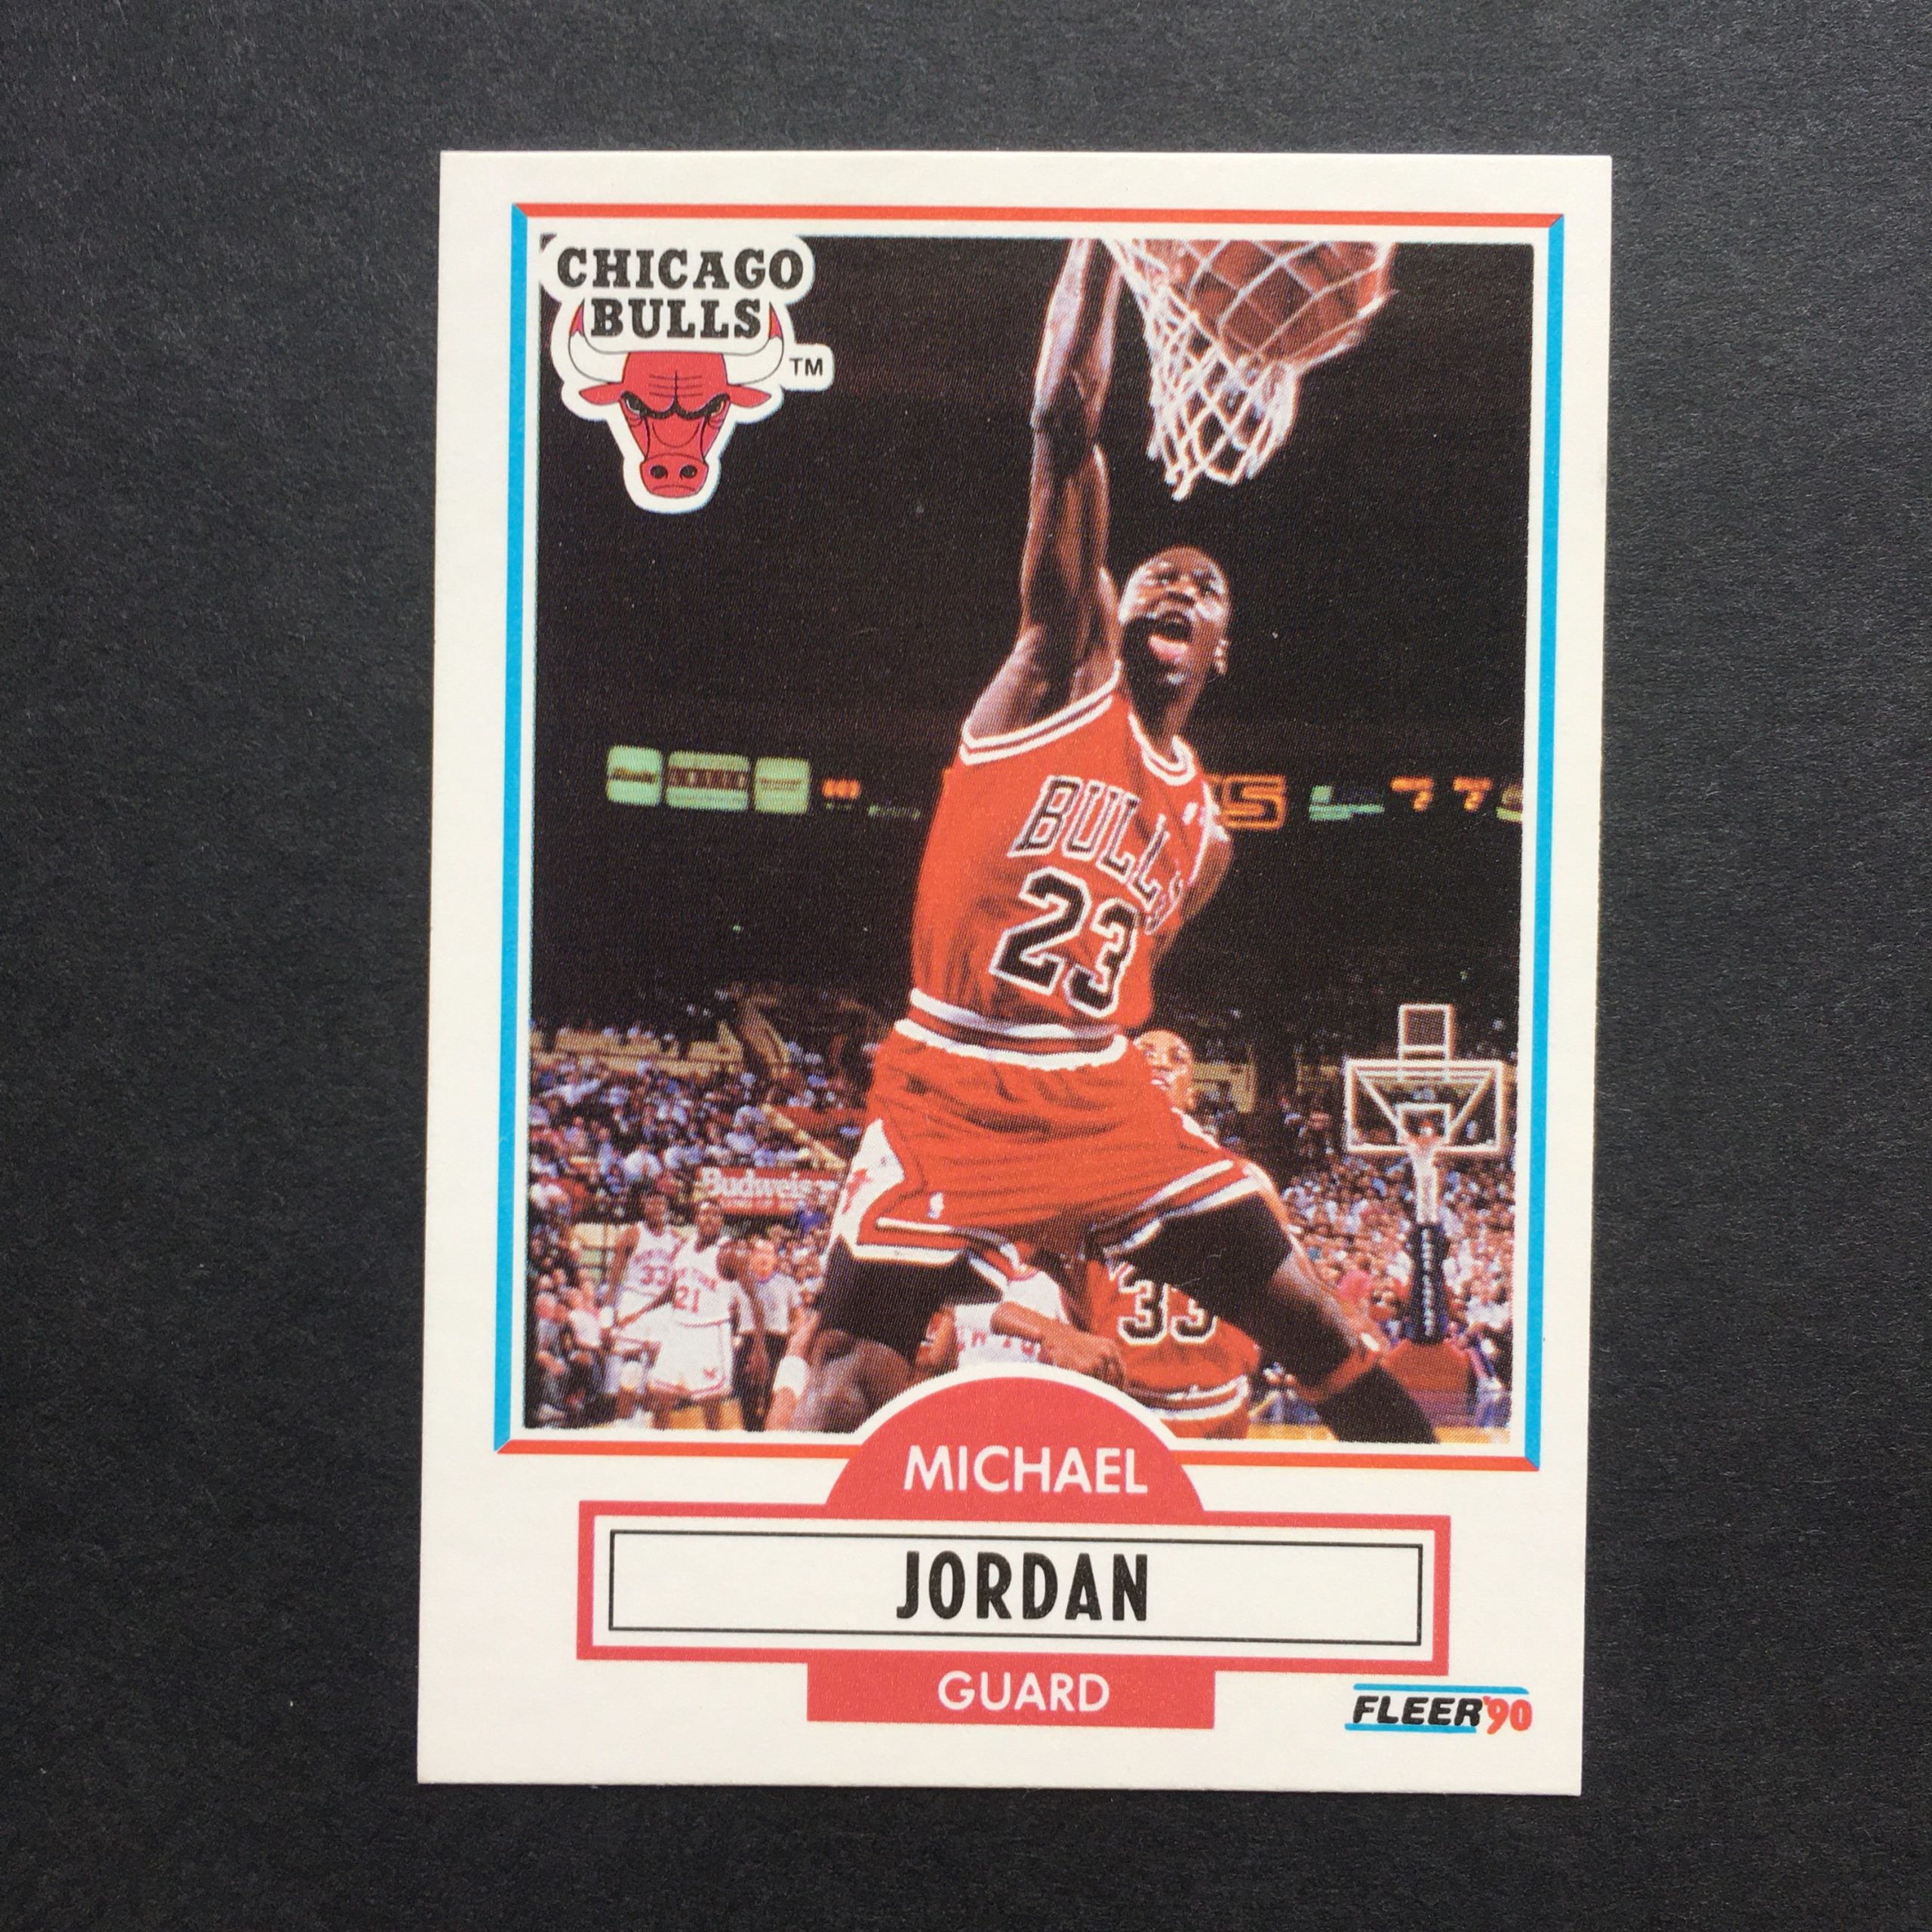 Michael Jordan 1990-91 Fleer Card